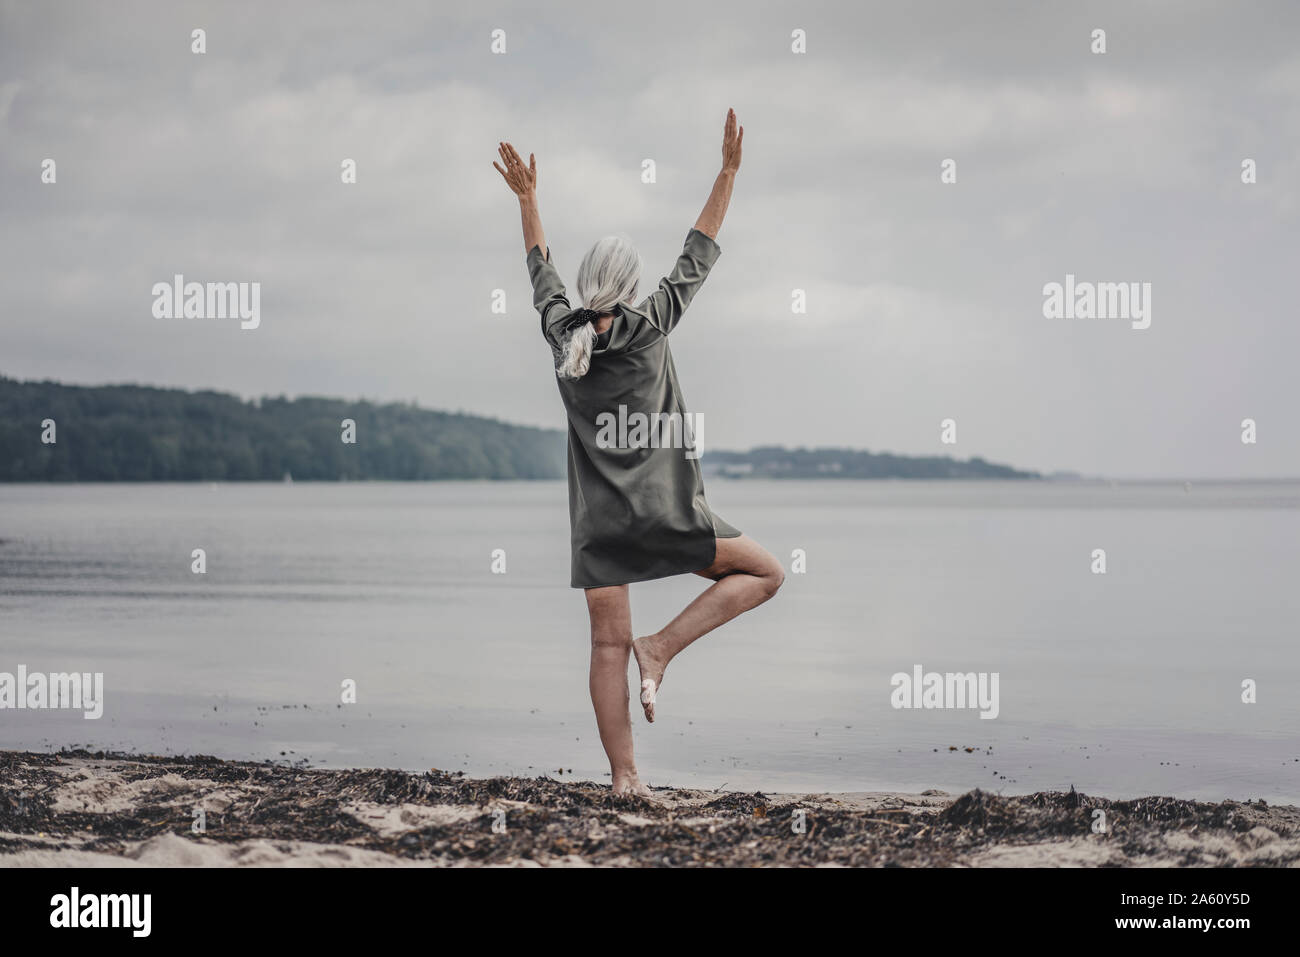 Senior woman looking at sea, debout sur une jambe, vue arrière Banque D'Images